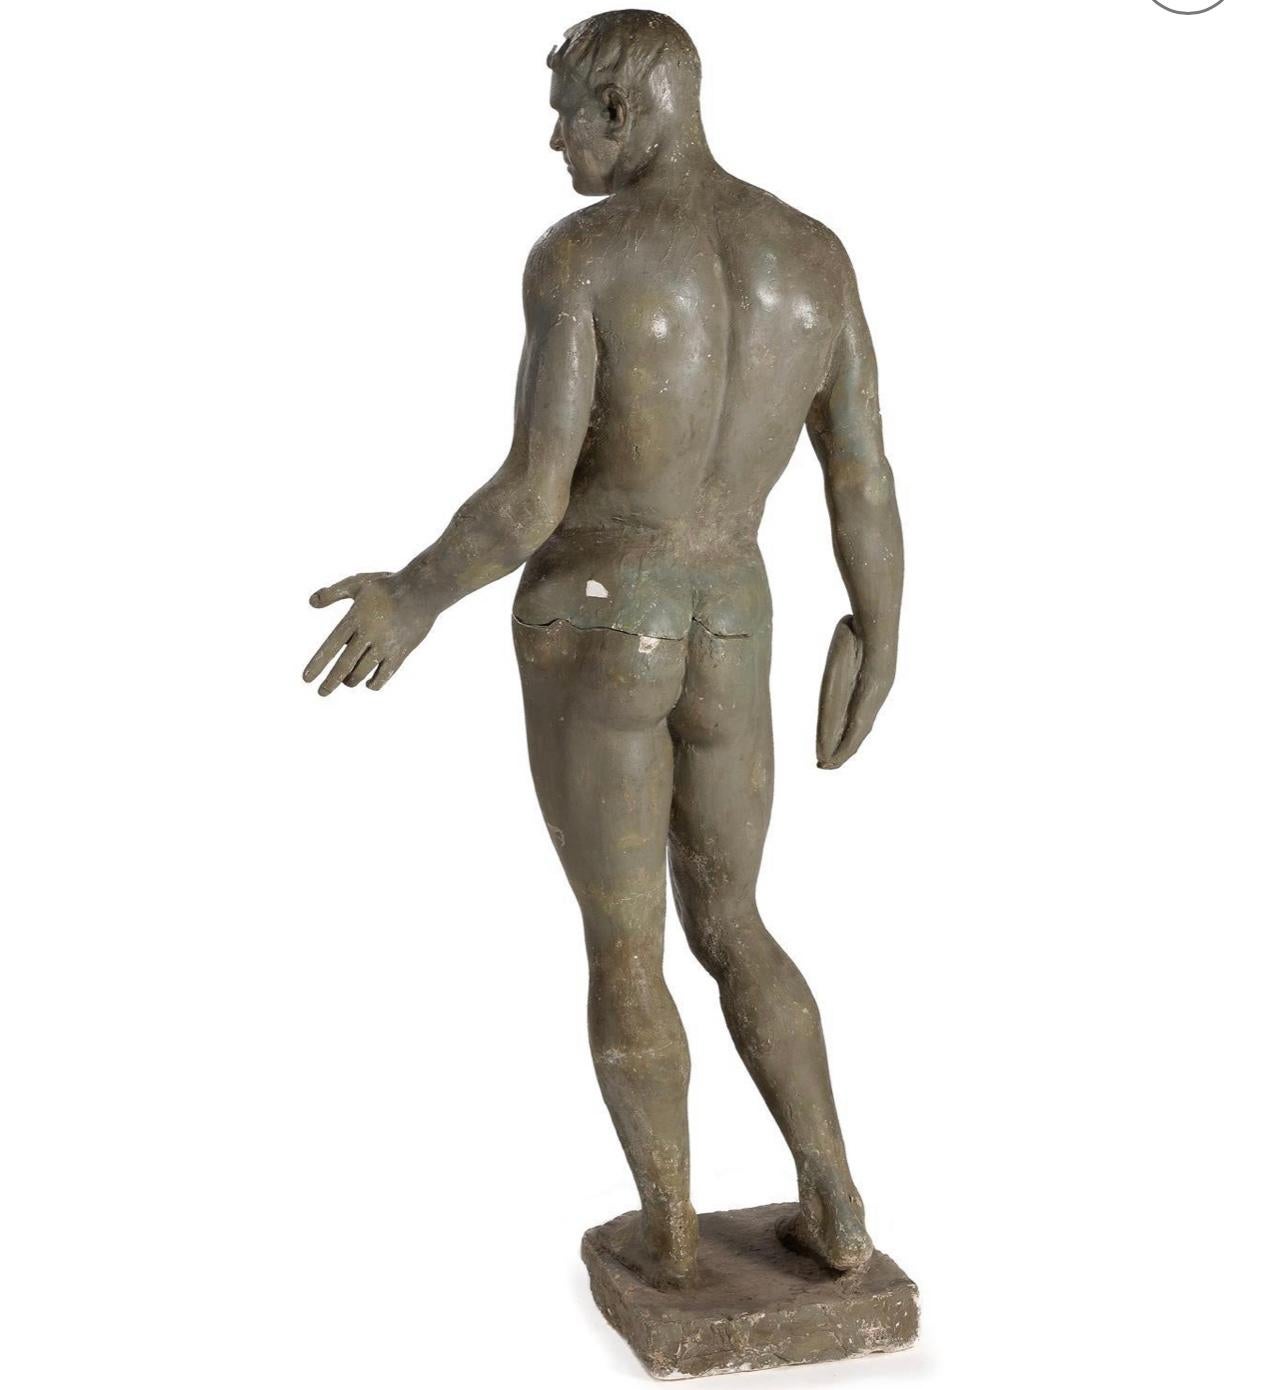 Attribué à Jean Rene Gauguin (franco-danois, 1881-1961), le lanceur de disque Copenhague, Circa 1926-1927 
Statuette en plâtre sculpté et peint de taille réelle sur un socle intégral (195 cm de haut). Plus que probablement une maquette.

Fils de